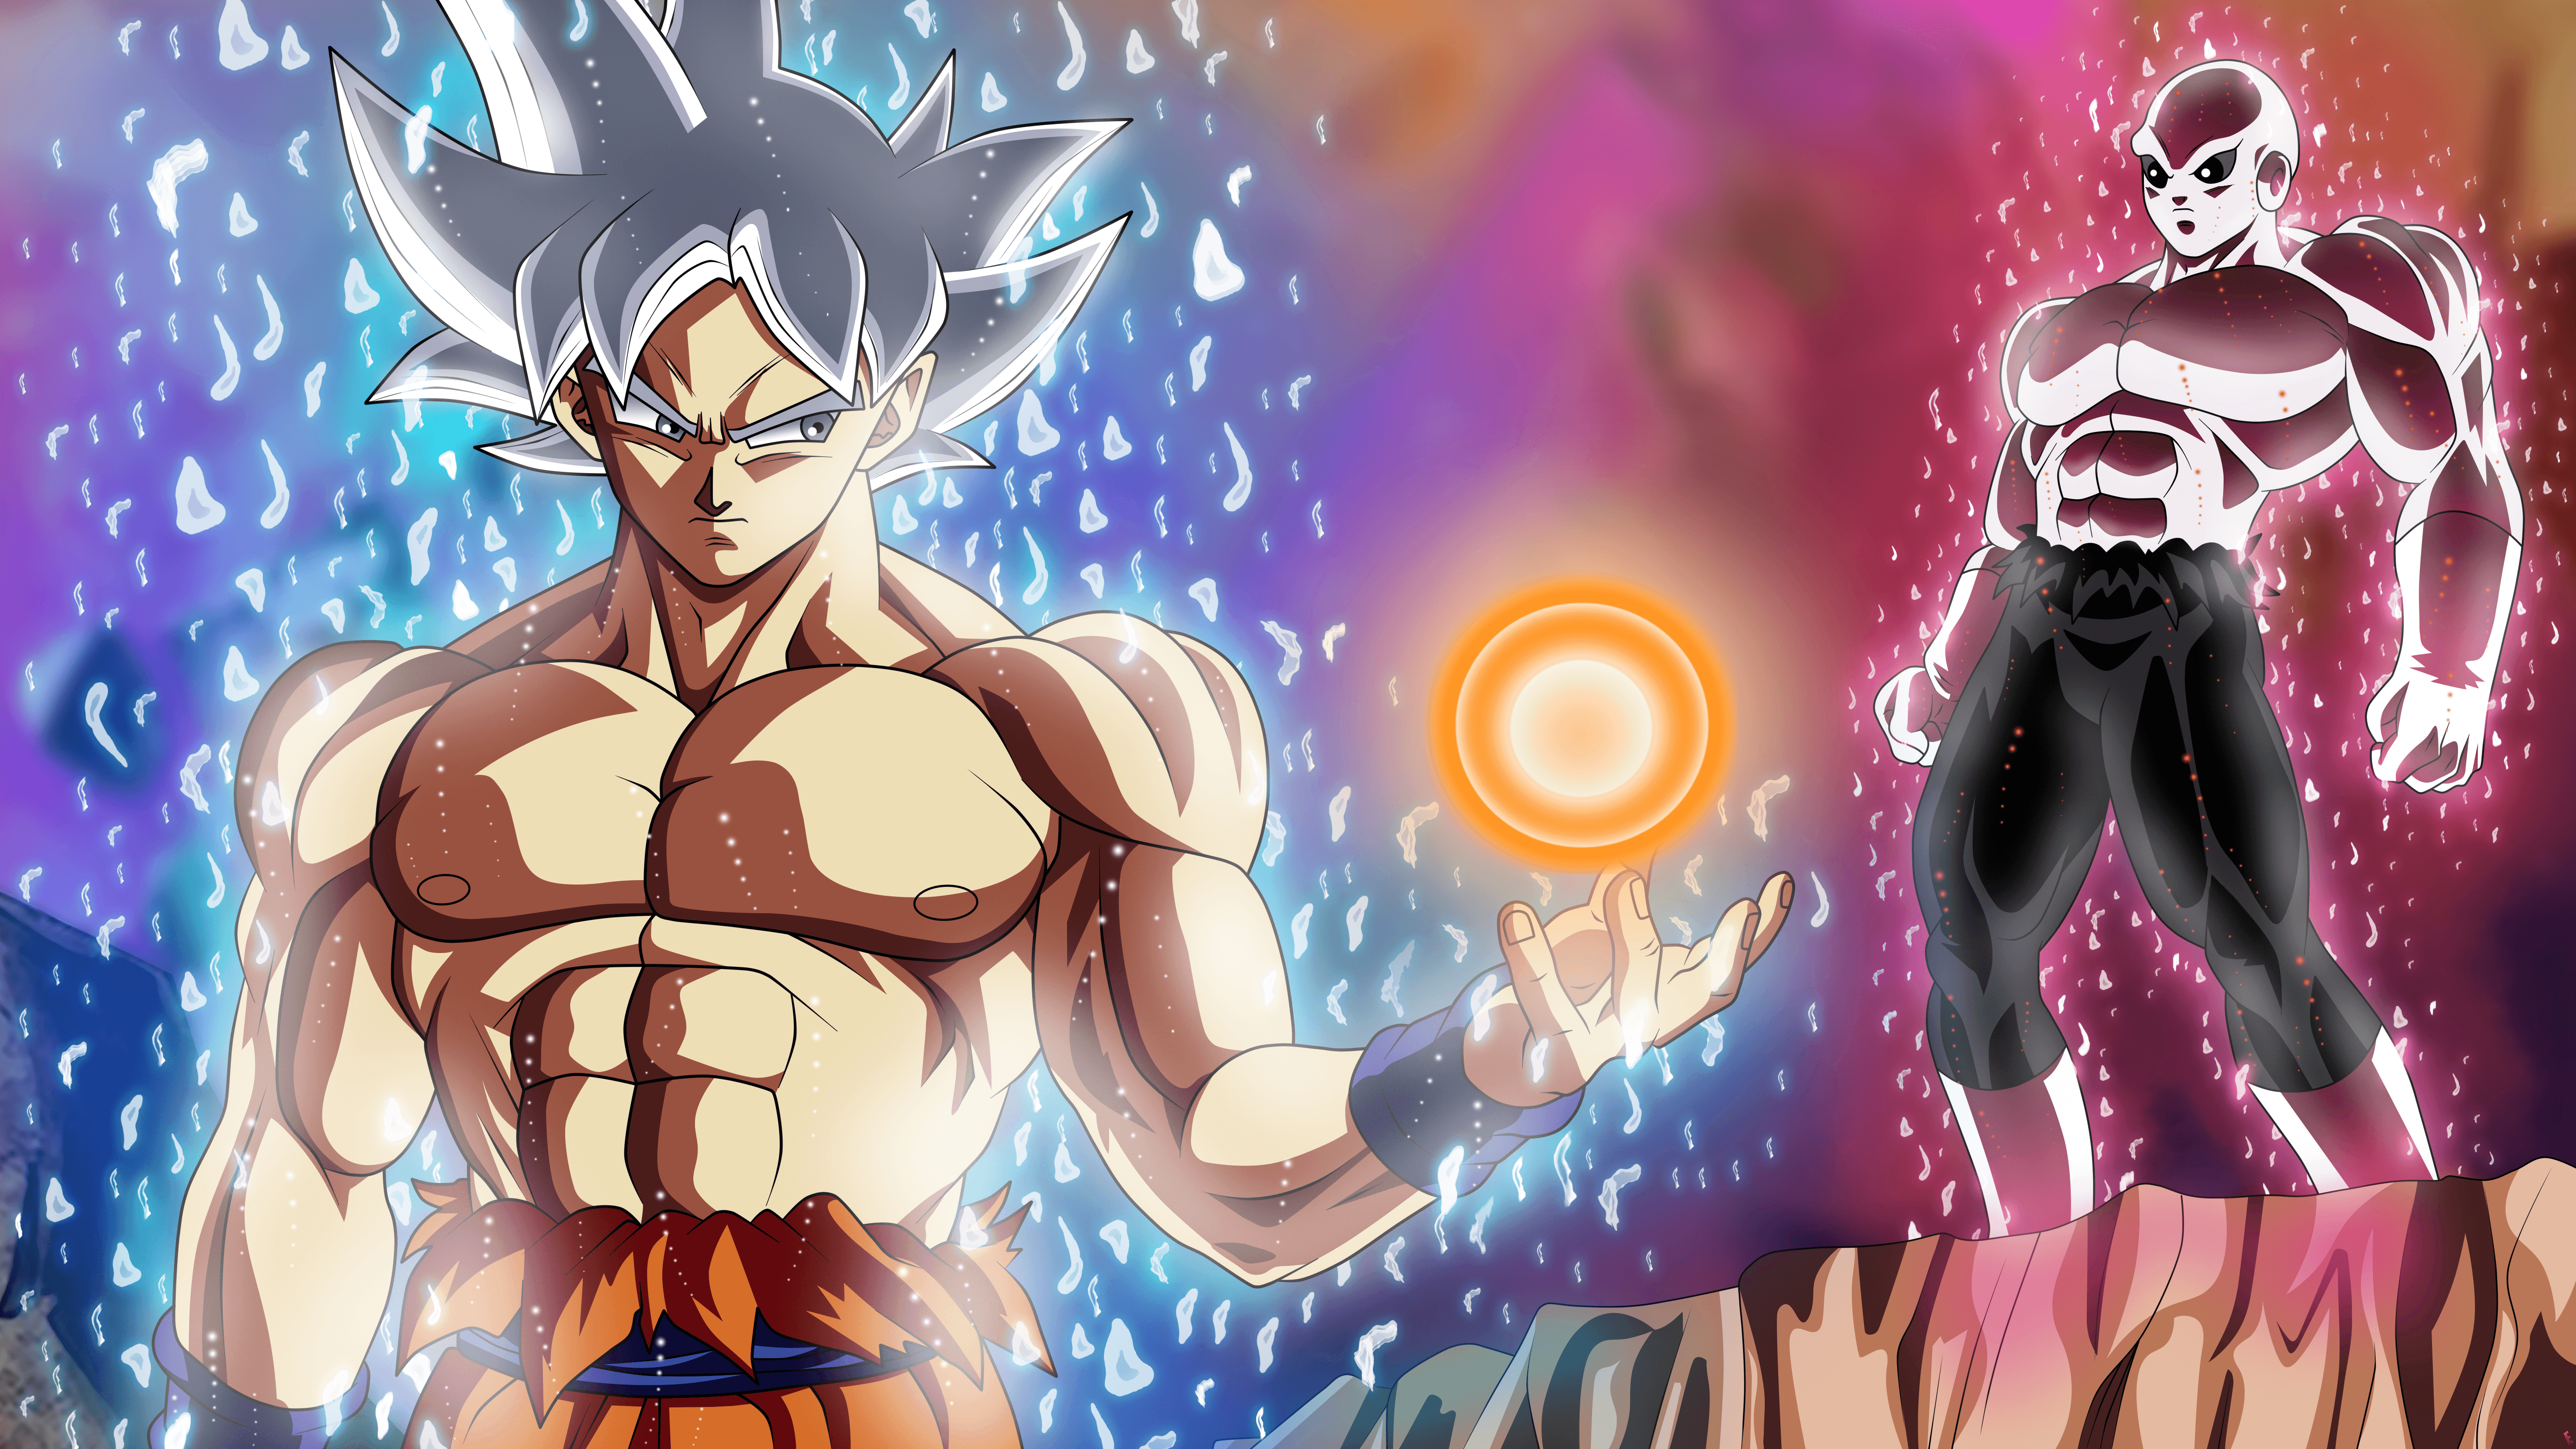 Goku vs Jiren Ultra Instinct Wallpapers.